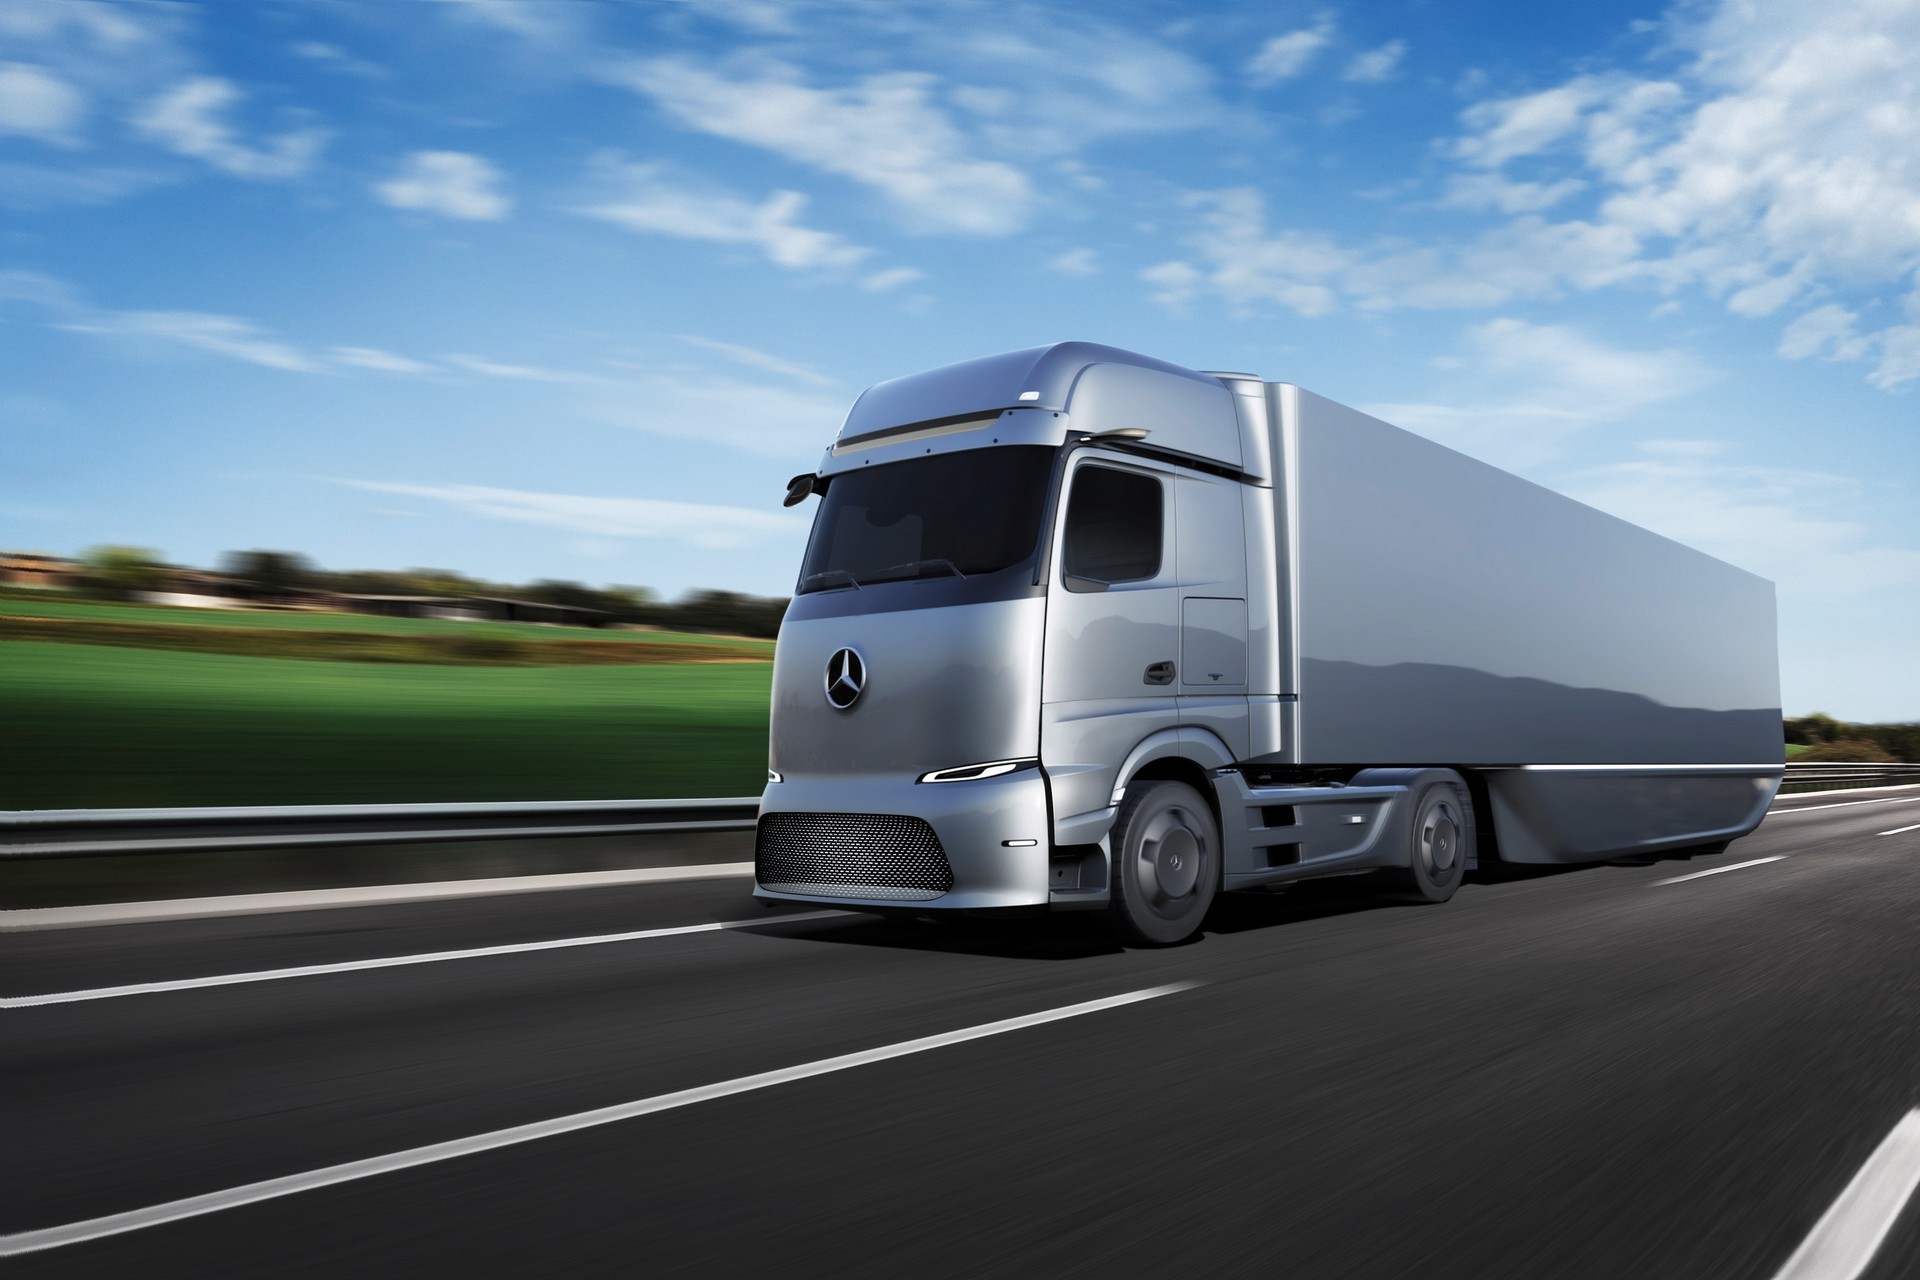 MercedesBenz GenH2 Truck Signals 2025 FuelCell LongHauler With 1,000